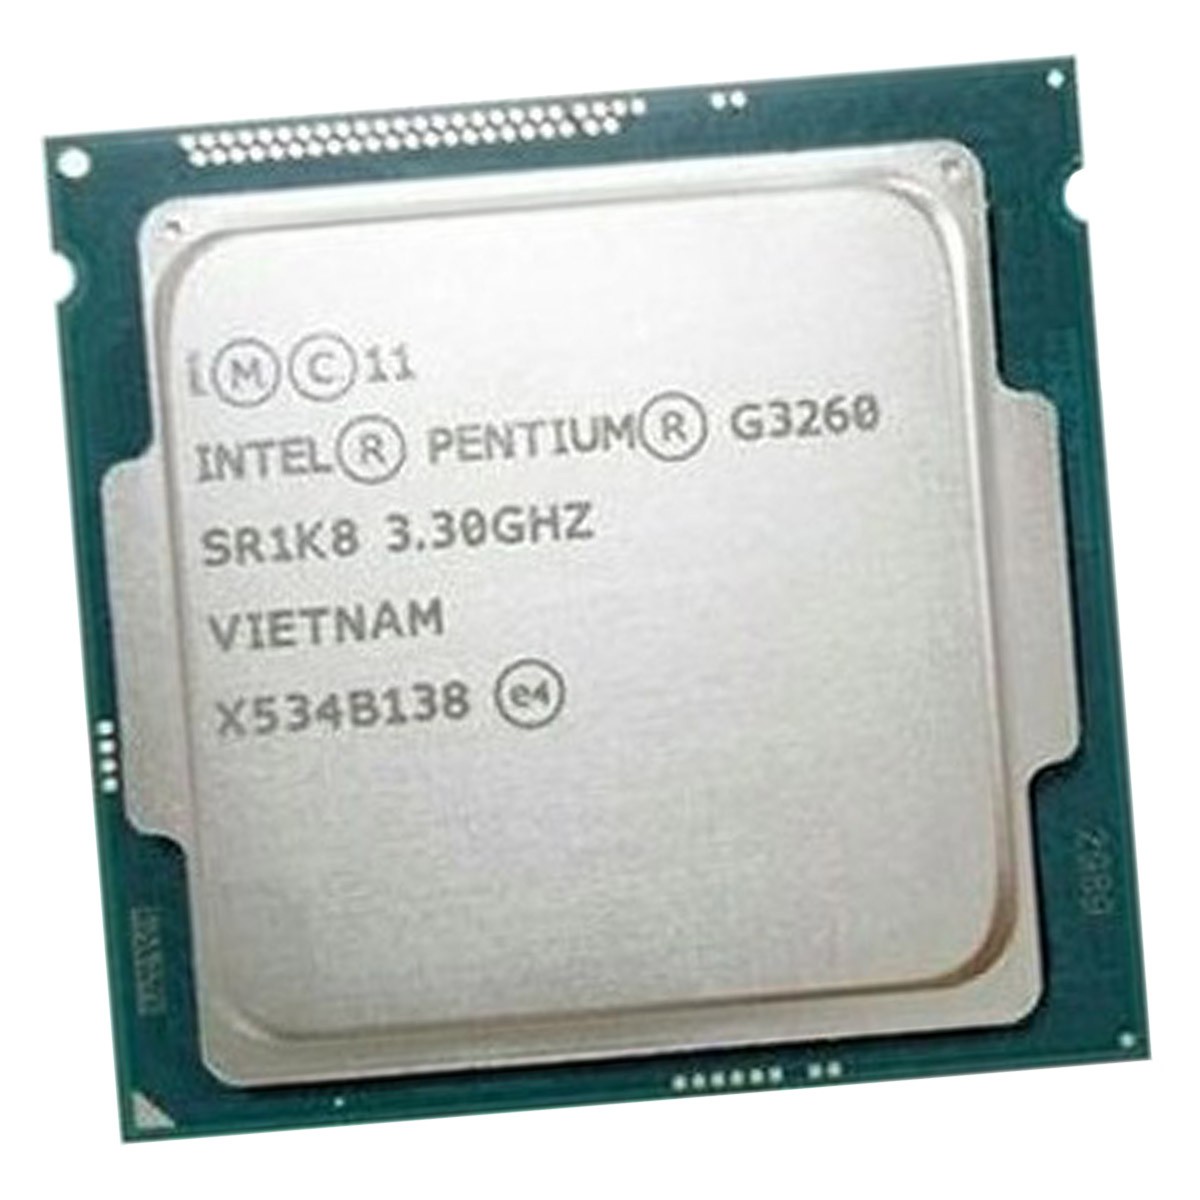 Pentium к g630 gta 5 фото 83